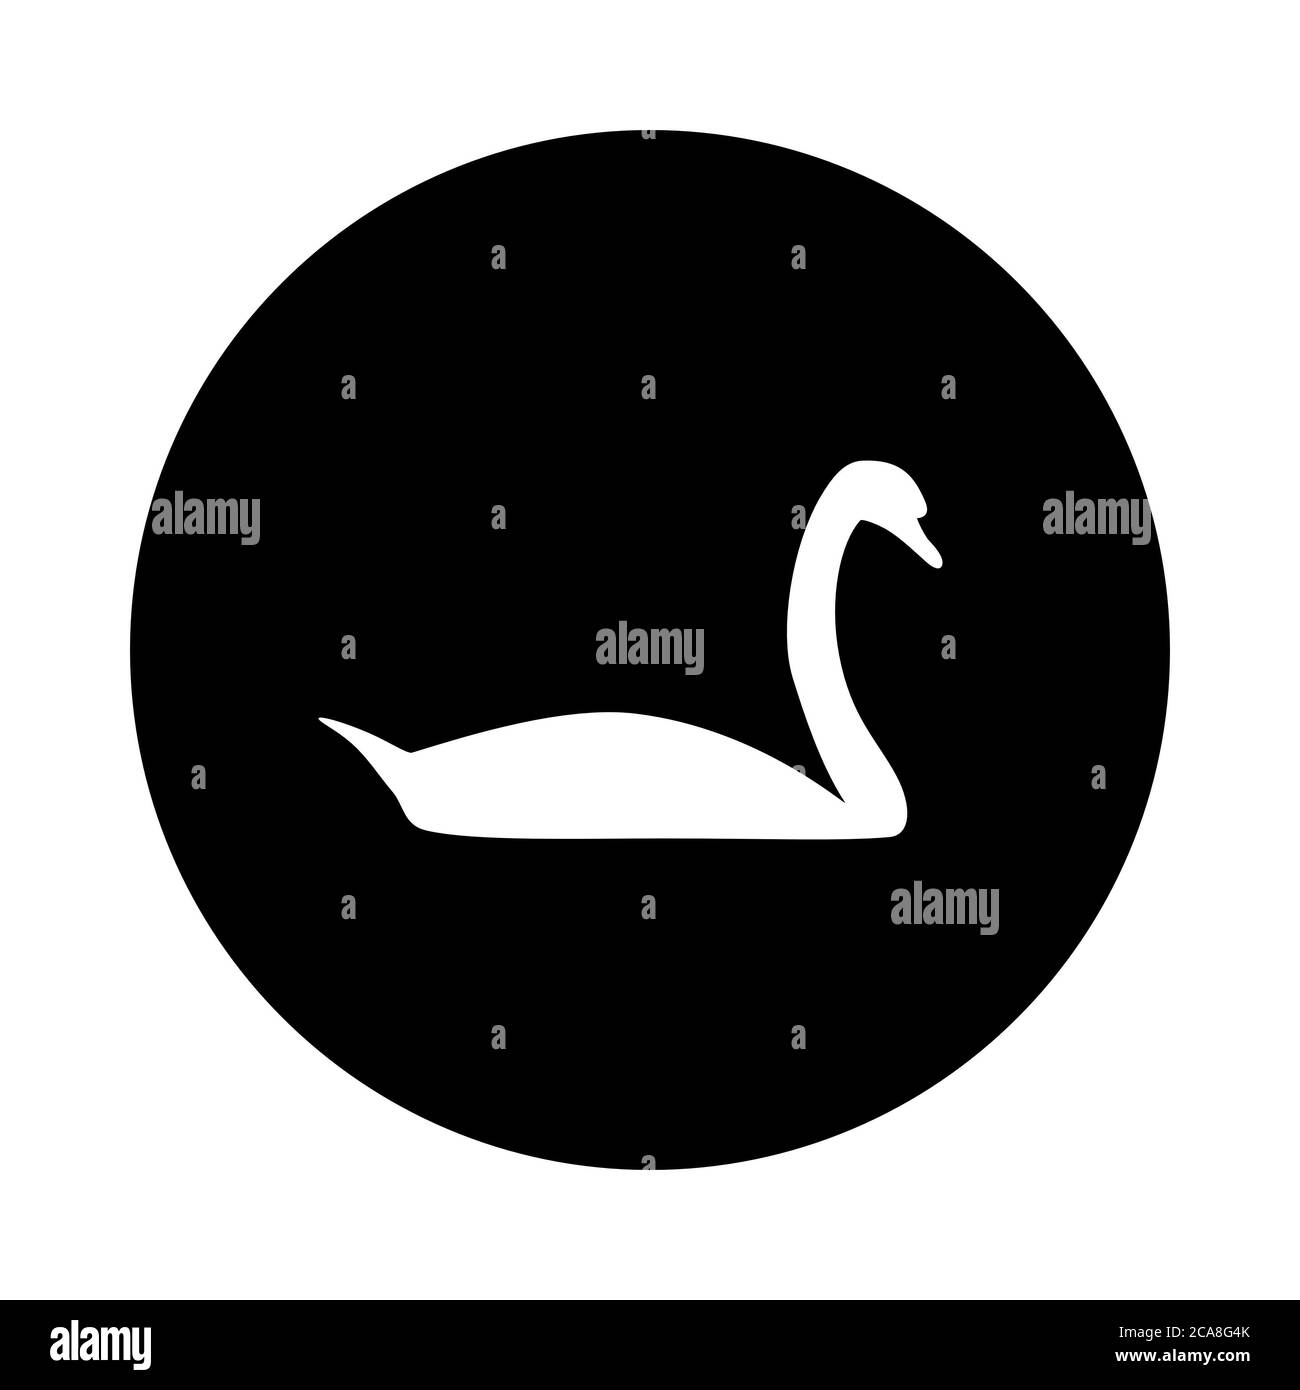 Swan and circle Stock Photo